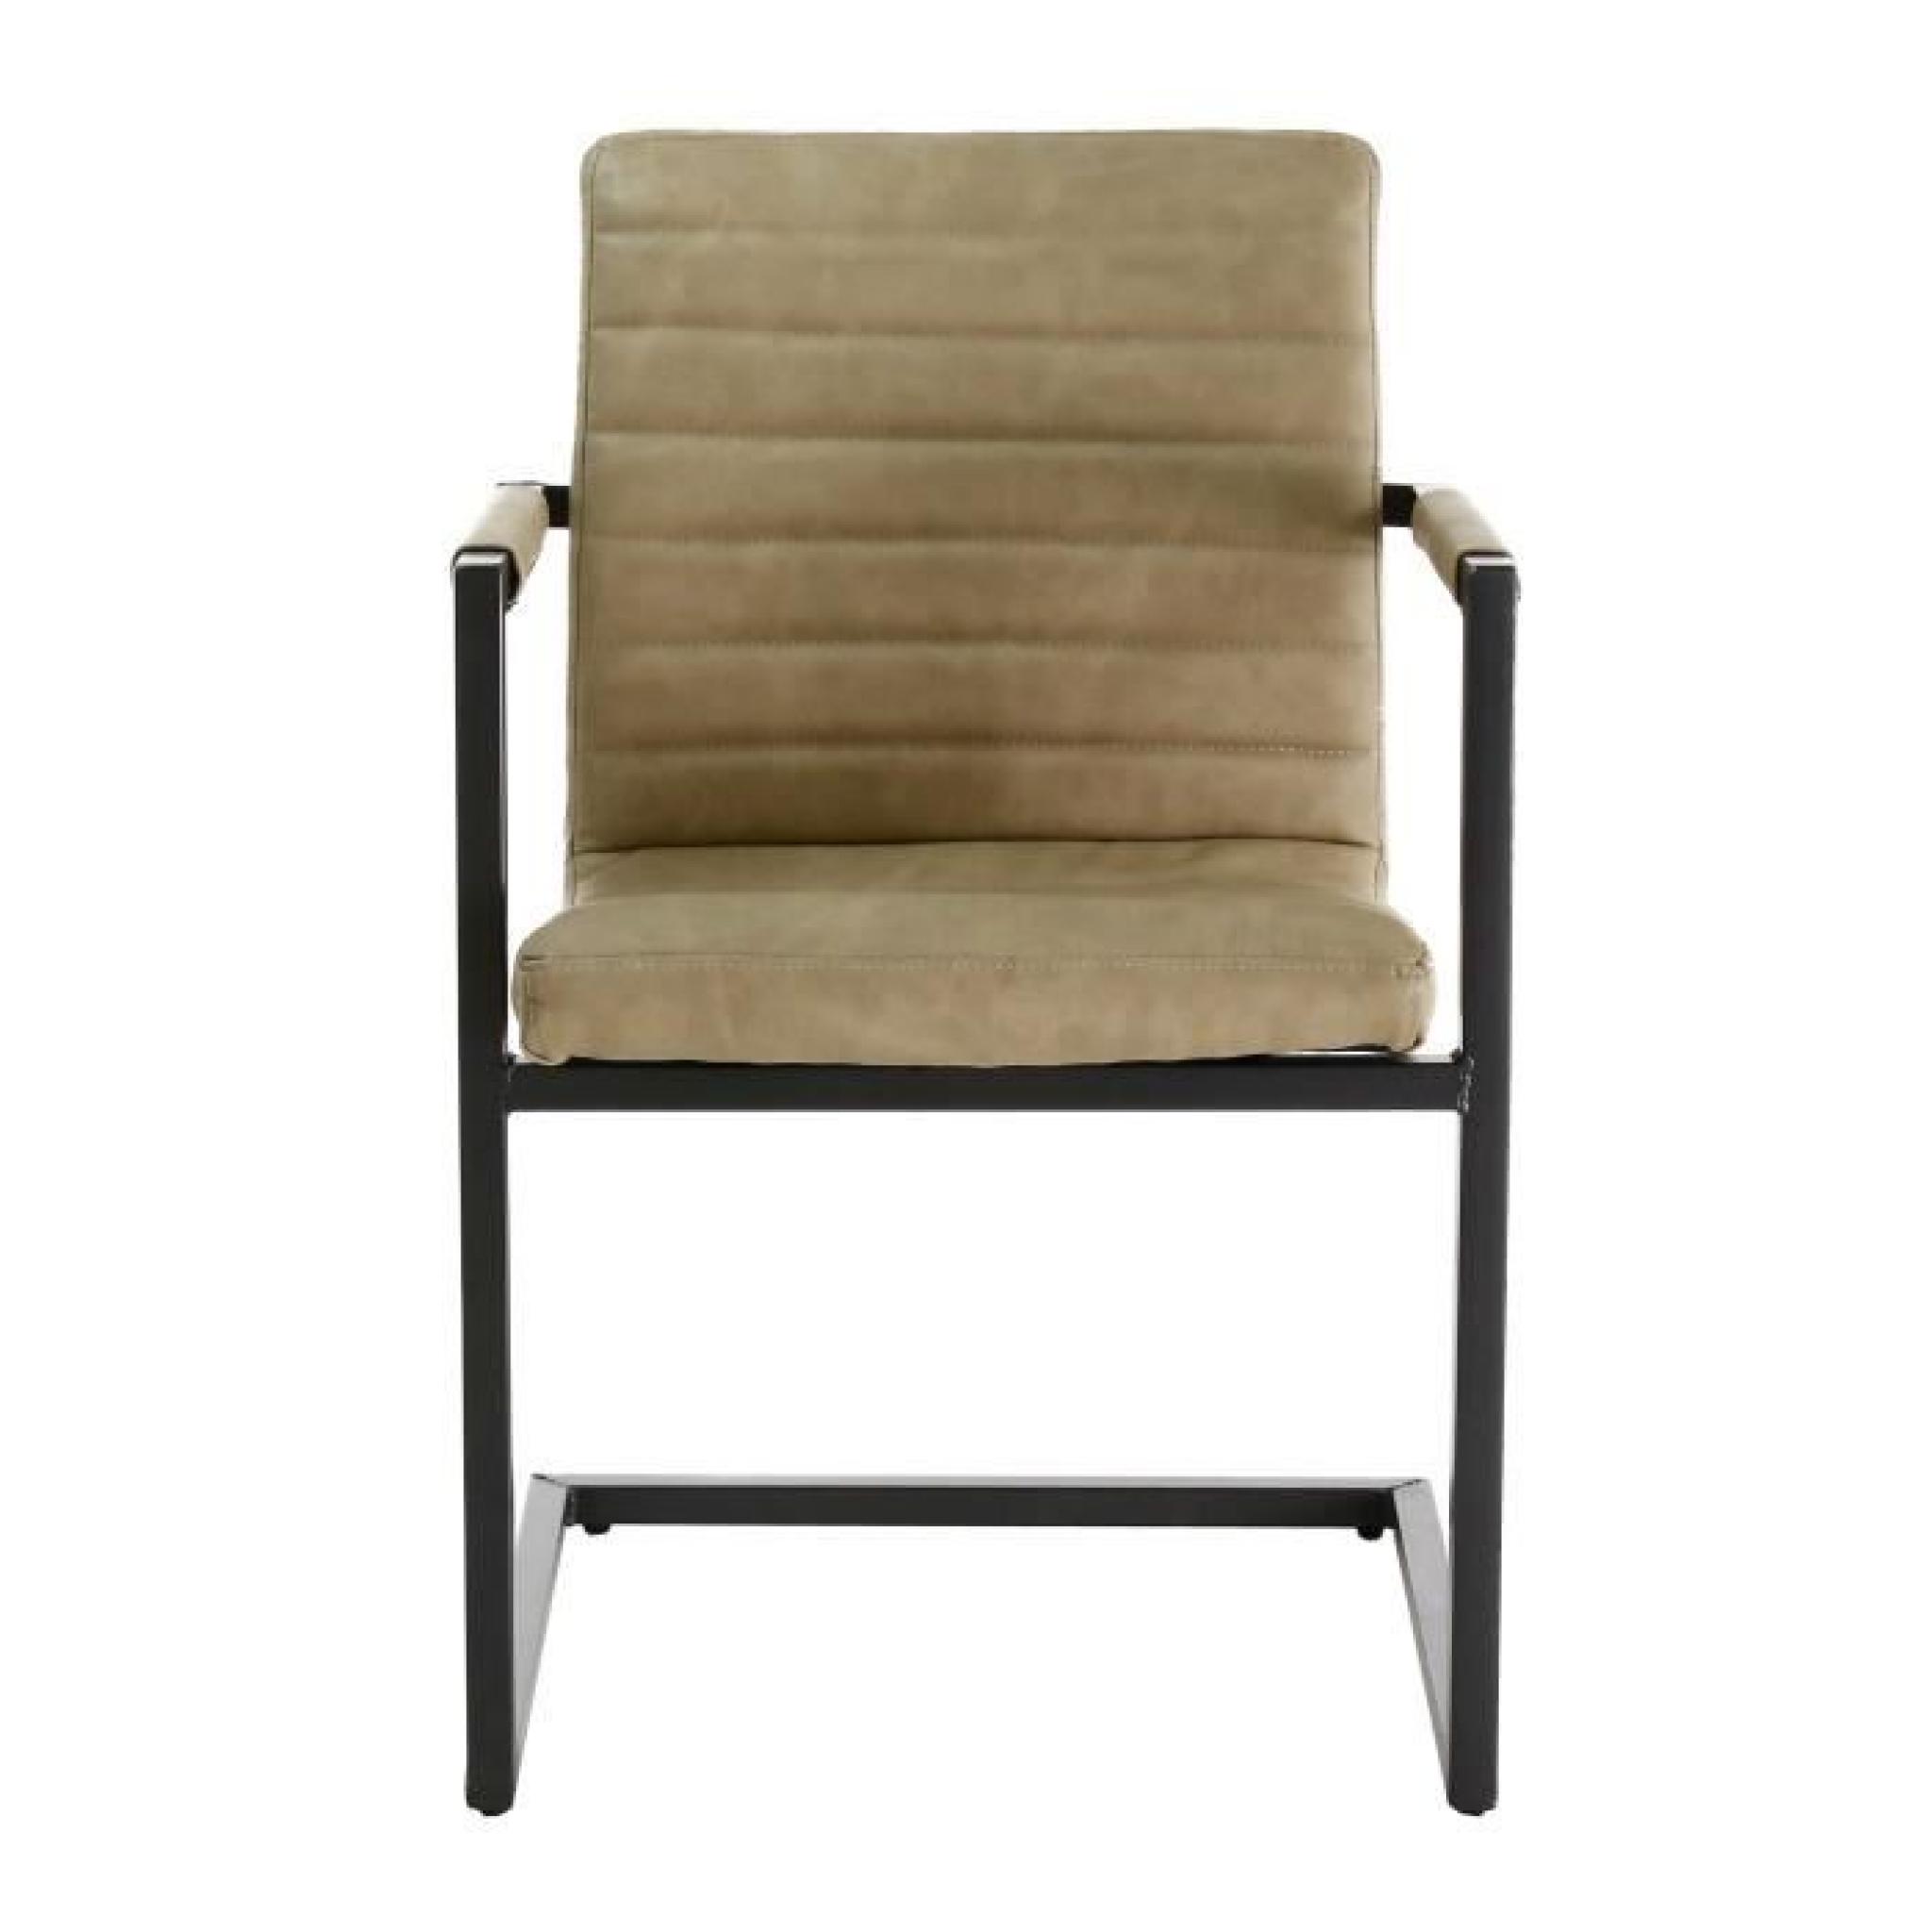 2x Chaise vintage métal avec accoudoirs beige Sitzen